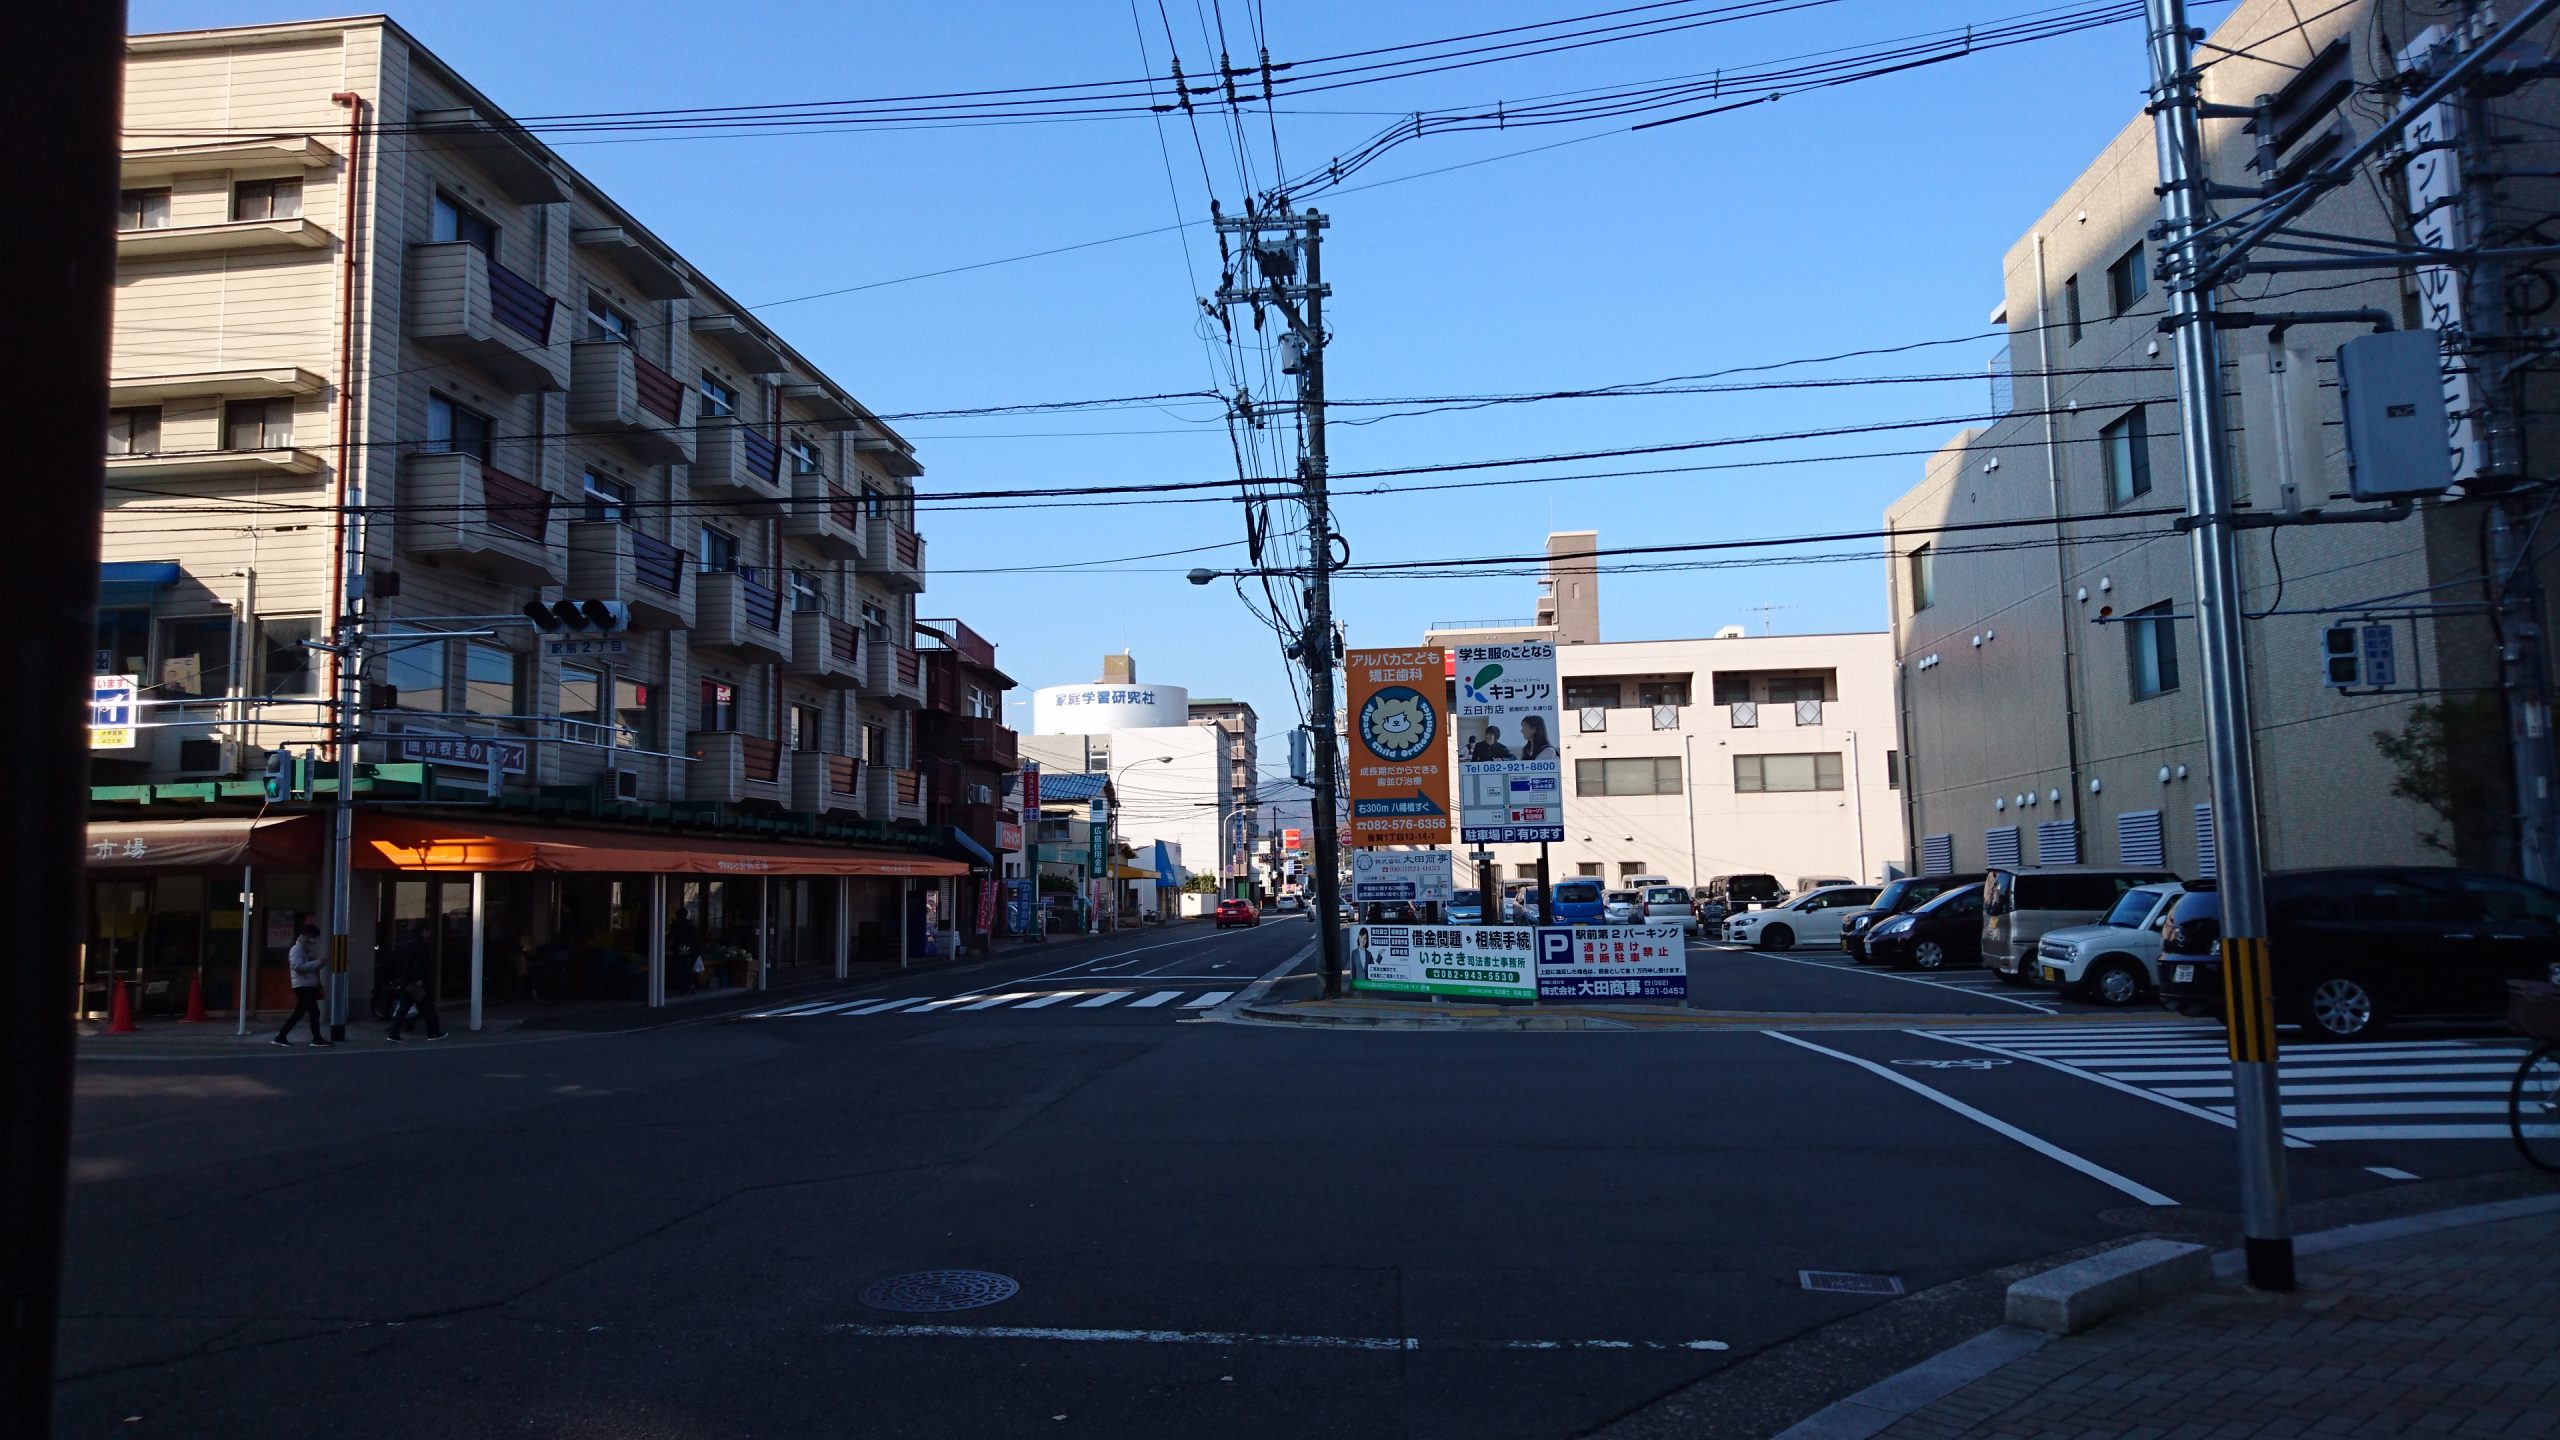 右側のセブンイレブン広島五日市駅前店様を通り過ぎる